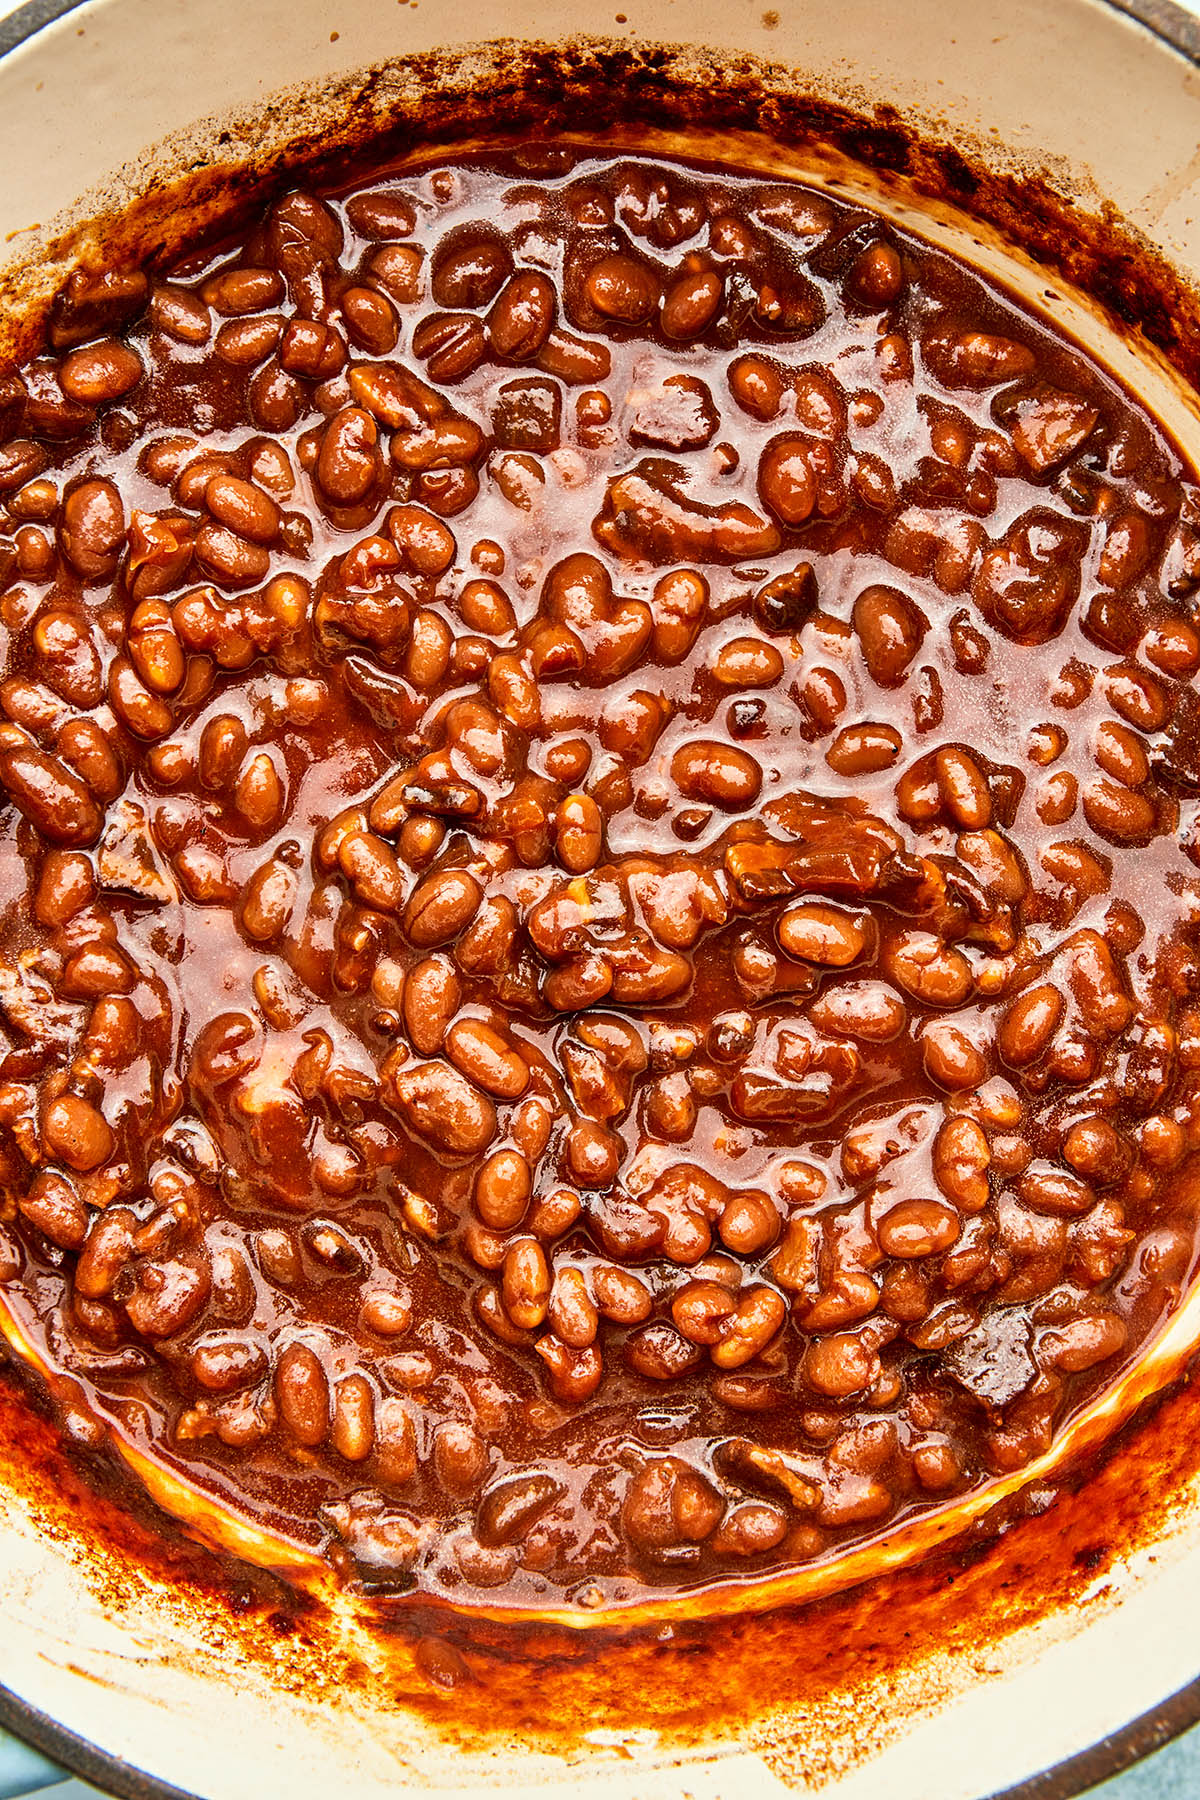 Molasses Baked Beans